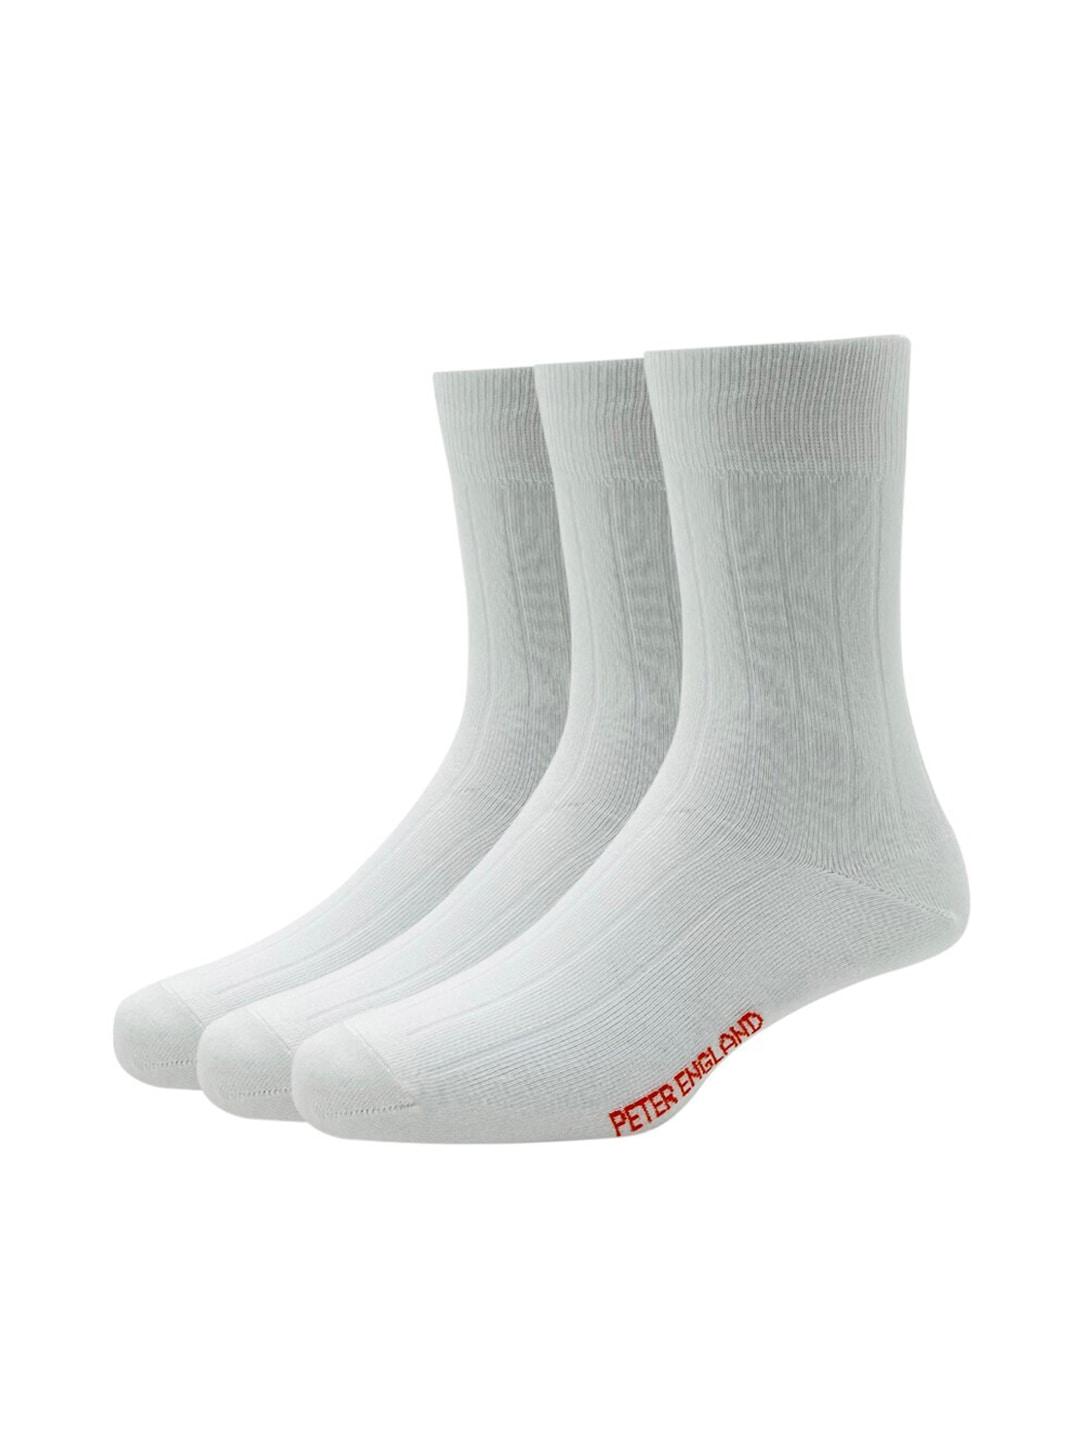 peter-england-men-white-pack-of-3-cotton-full-length-socks